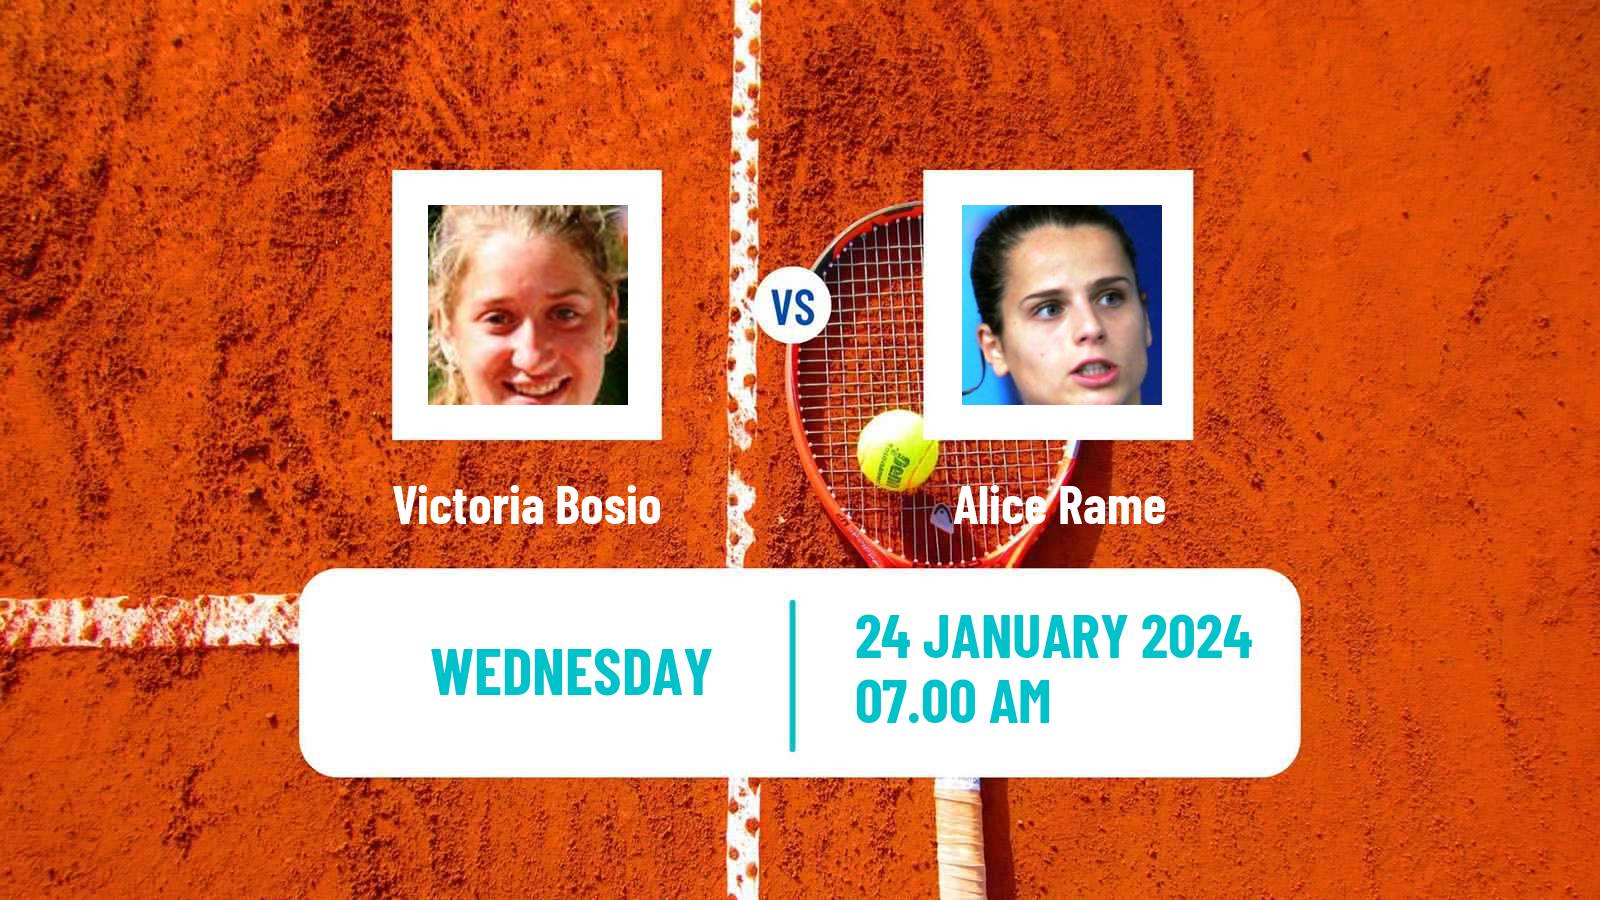 Tennis ITF W35 Buenos Aires 2 Women Victoria Bosio - Alice Rame